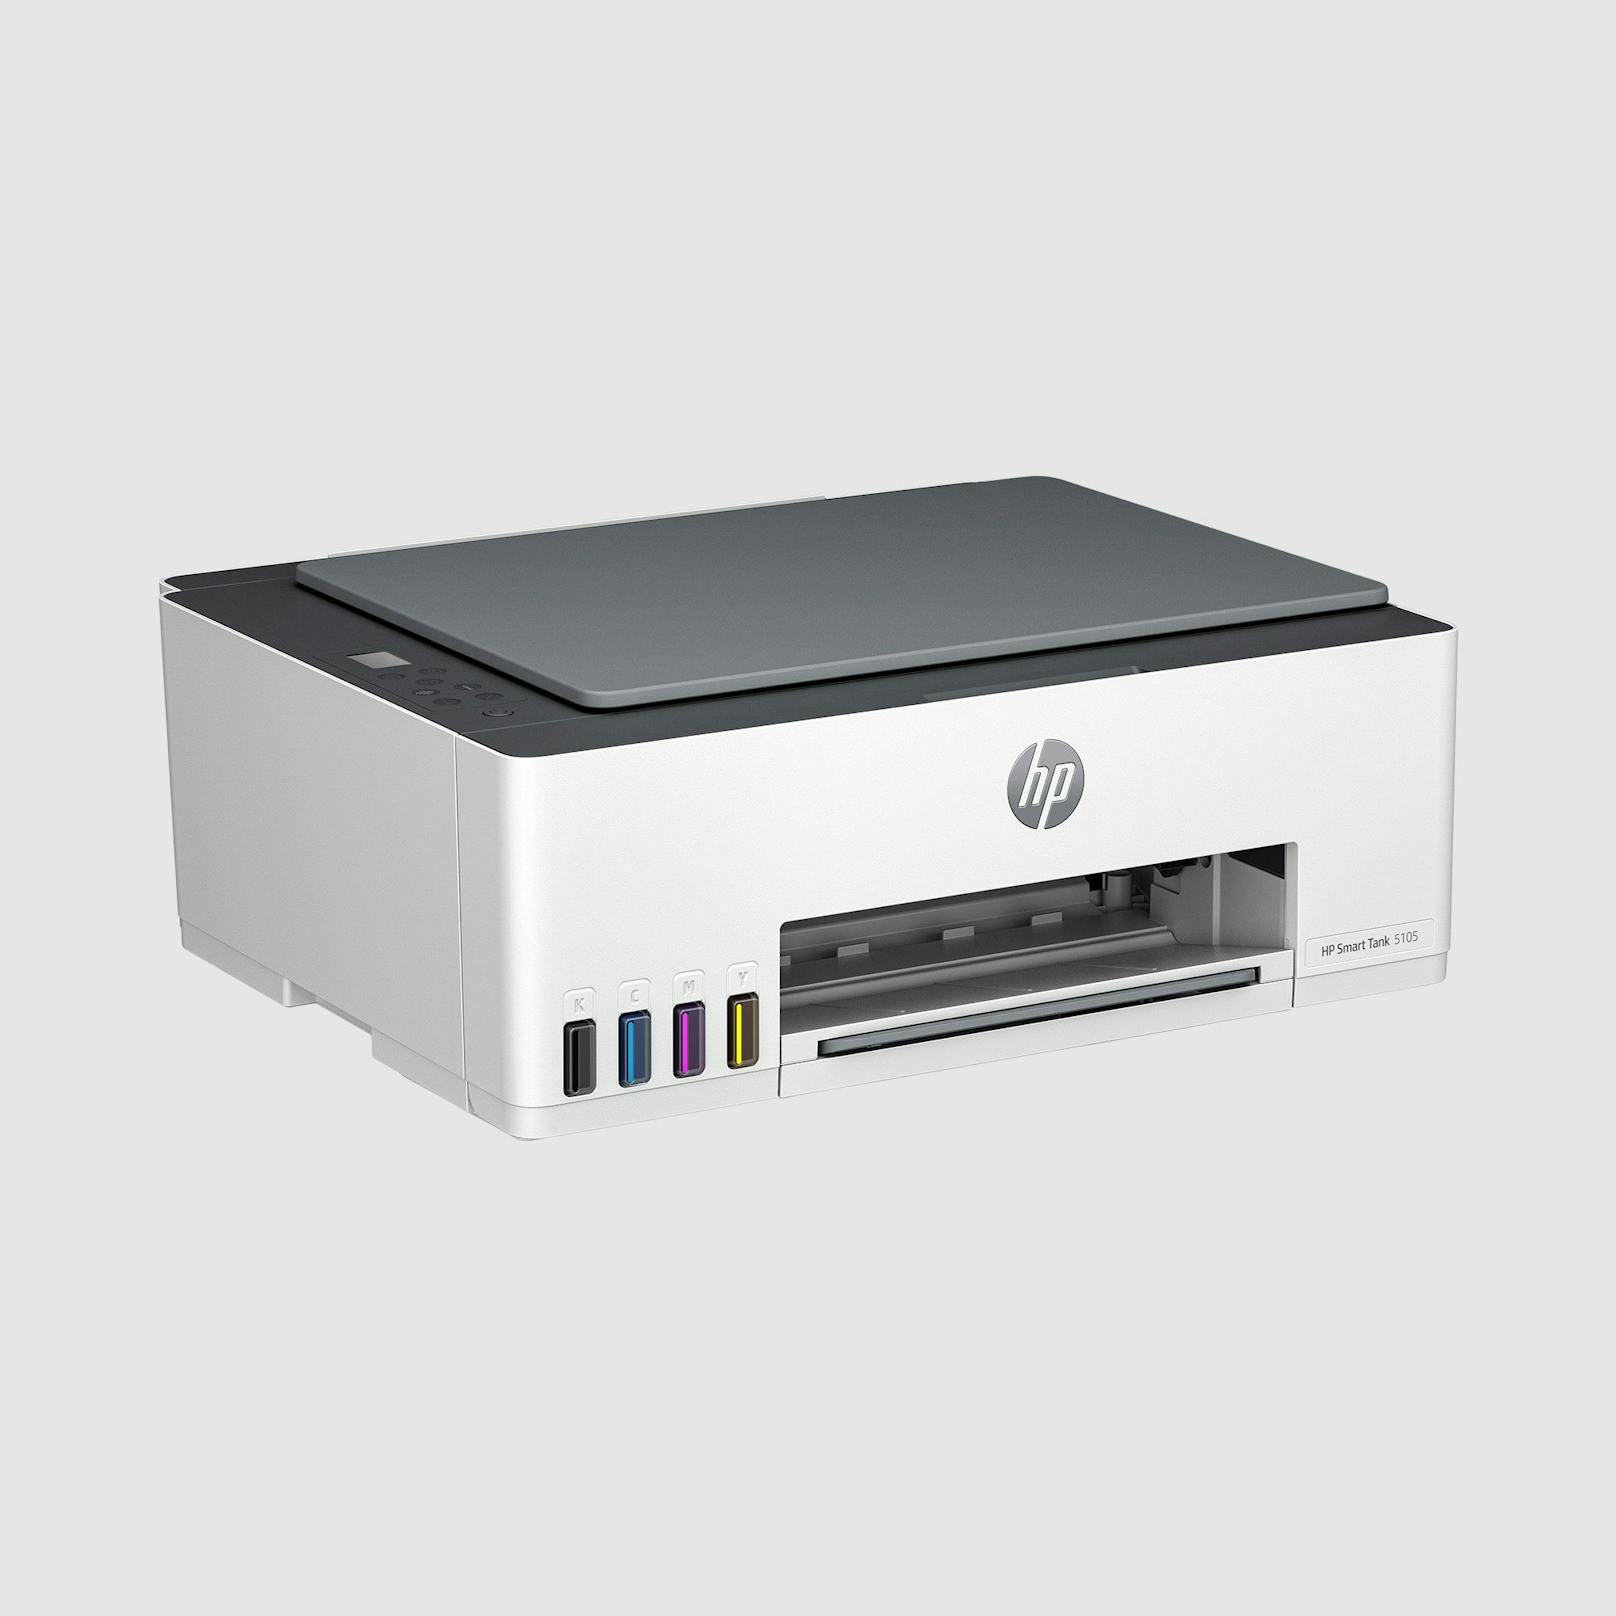 Zum Jahresstart präsentiert HP Inc. den neuen HP Smart Tank 5105 Drucker. 